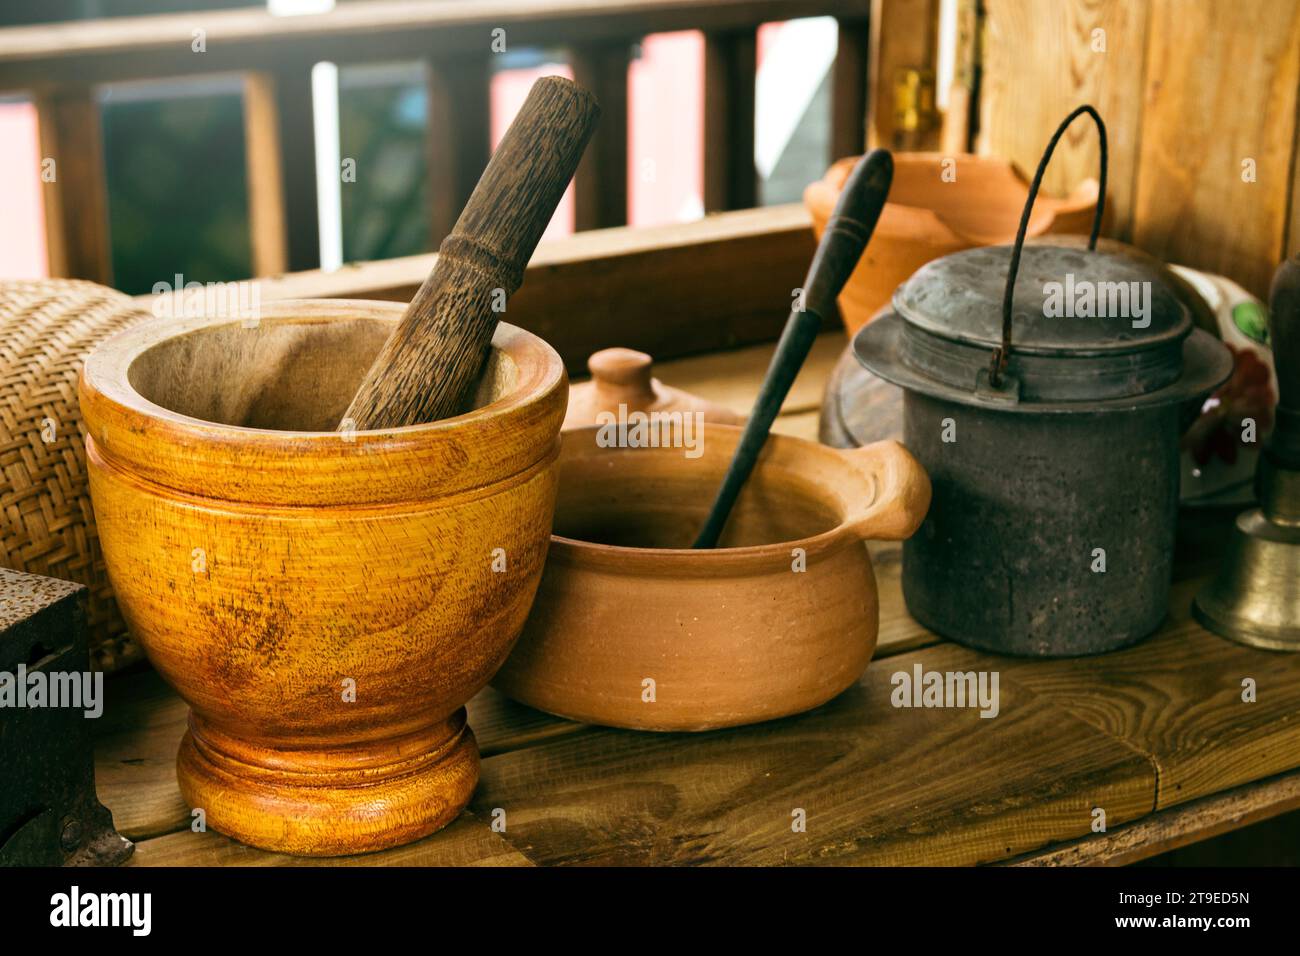 Nahaufnahme von handwerklich hergestelltem Mörtel, Stößel und anderem Küchengeschirr auf dem Holztisch im Landhaus. Stockfoto